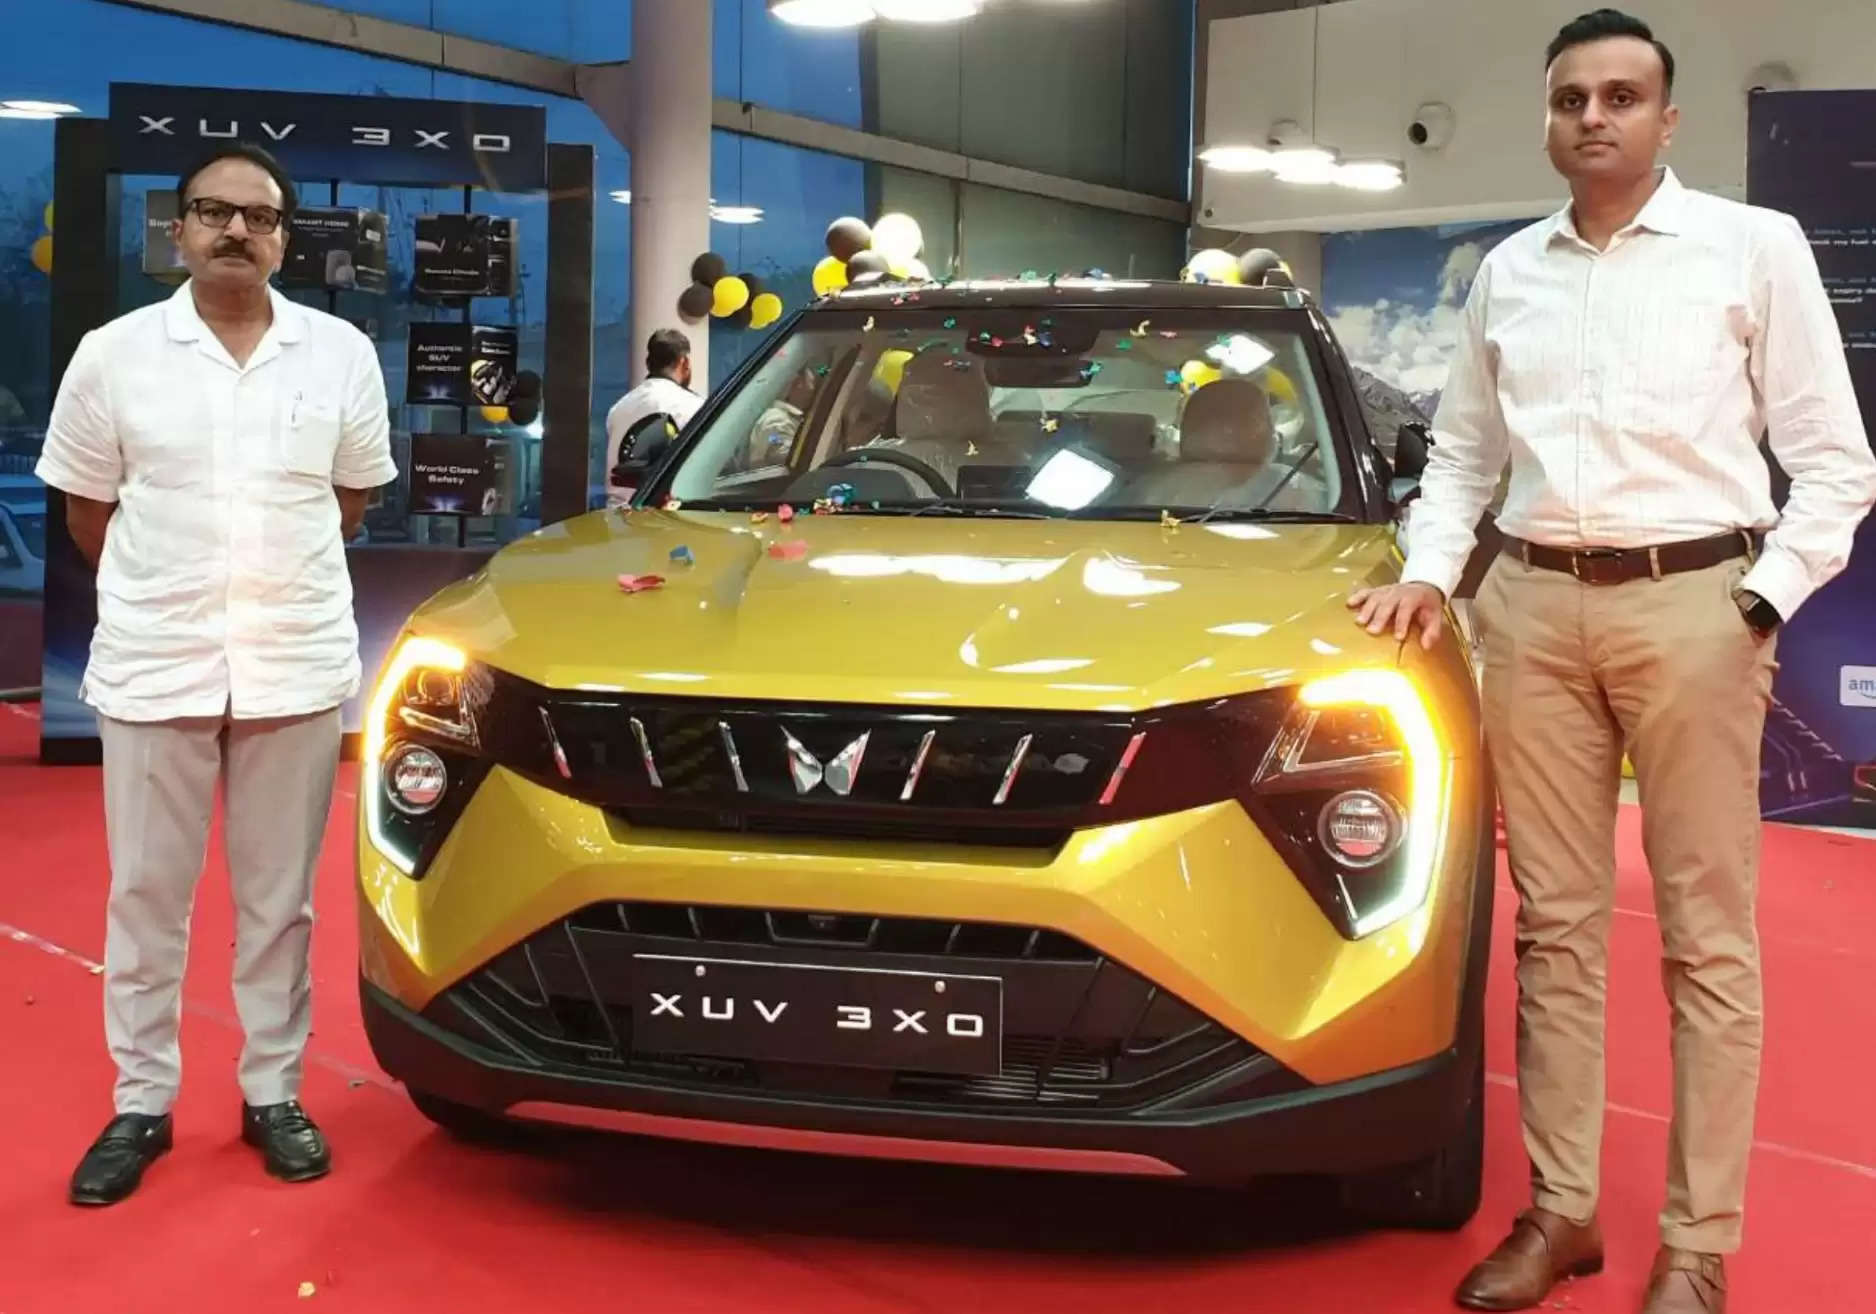 Udaipur Mahindra car Dealer KS Automobiles, Mahindra XUV 3XO Launched in Udaipur, But Mahindra XUV 3XO in Udaipur